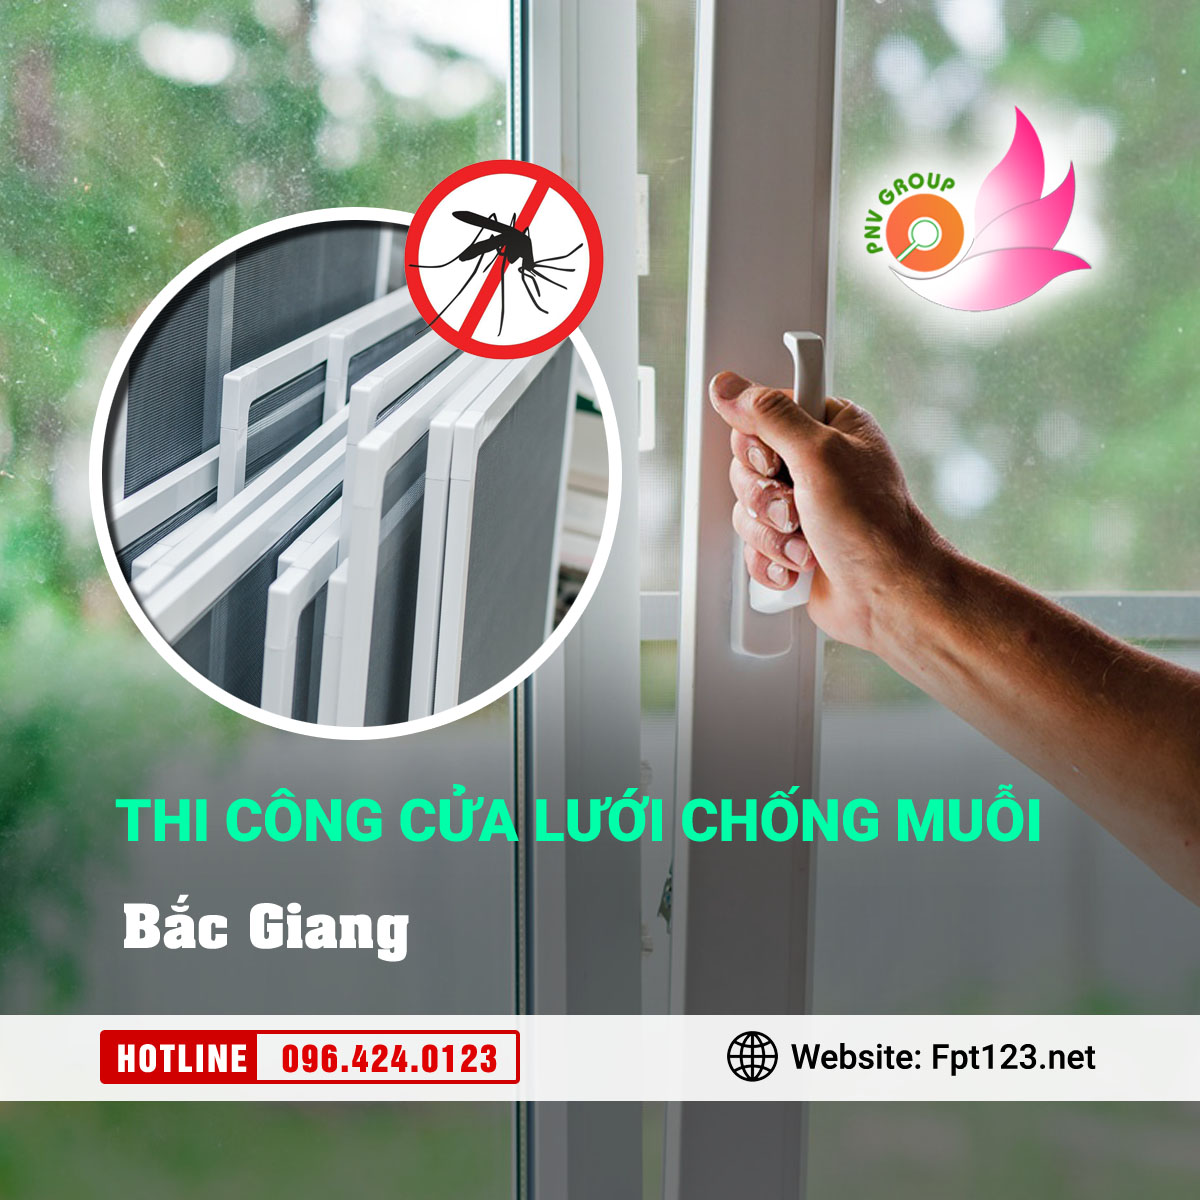 Lắp đặt cửa lưới chống muỗi tại Bắc Giang